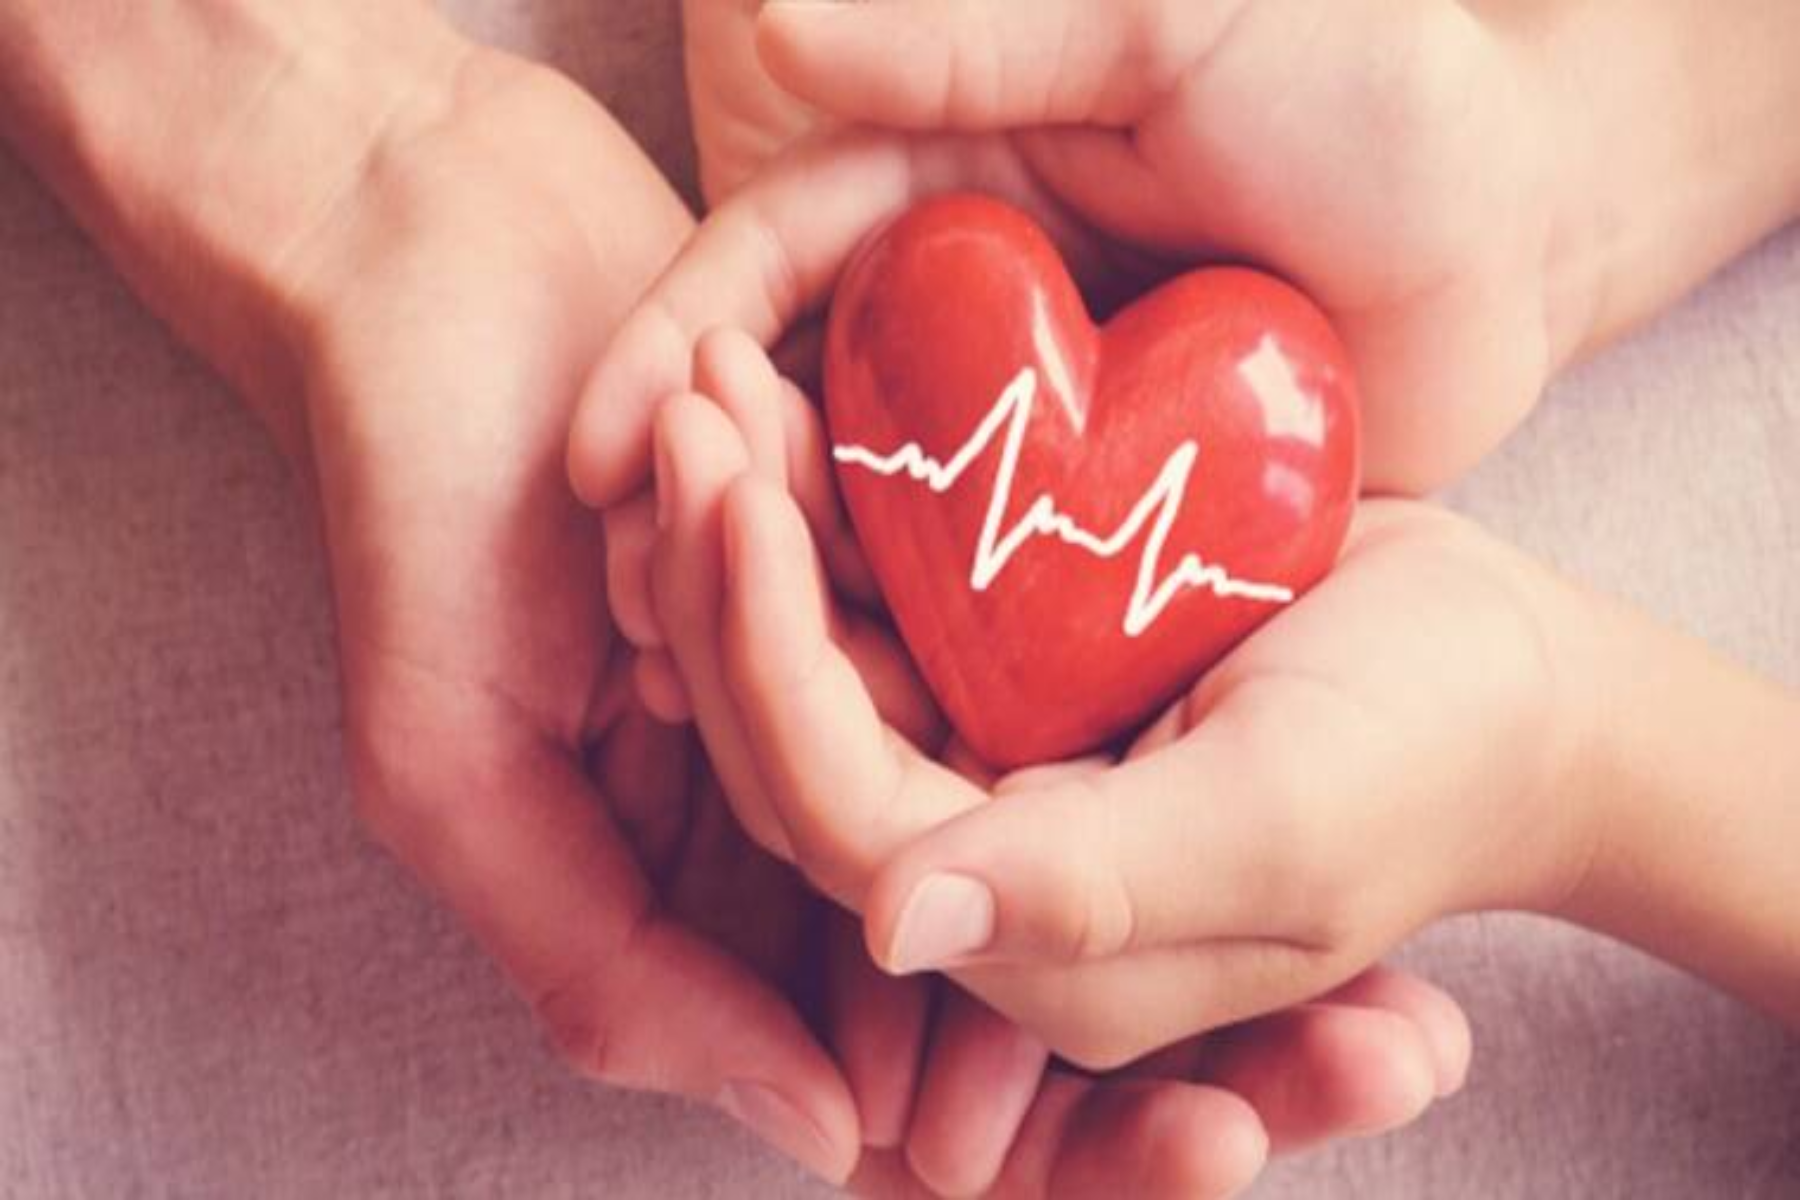 Μεταμόσχευση: Οι δωρητές που είχαν COVID είναι ασφαλείς για μεταμόσχευση καρδιάς